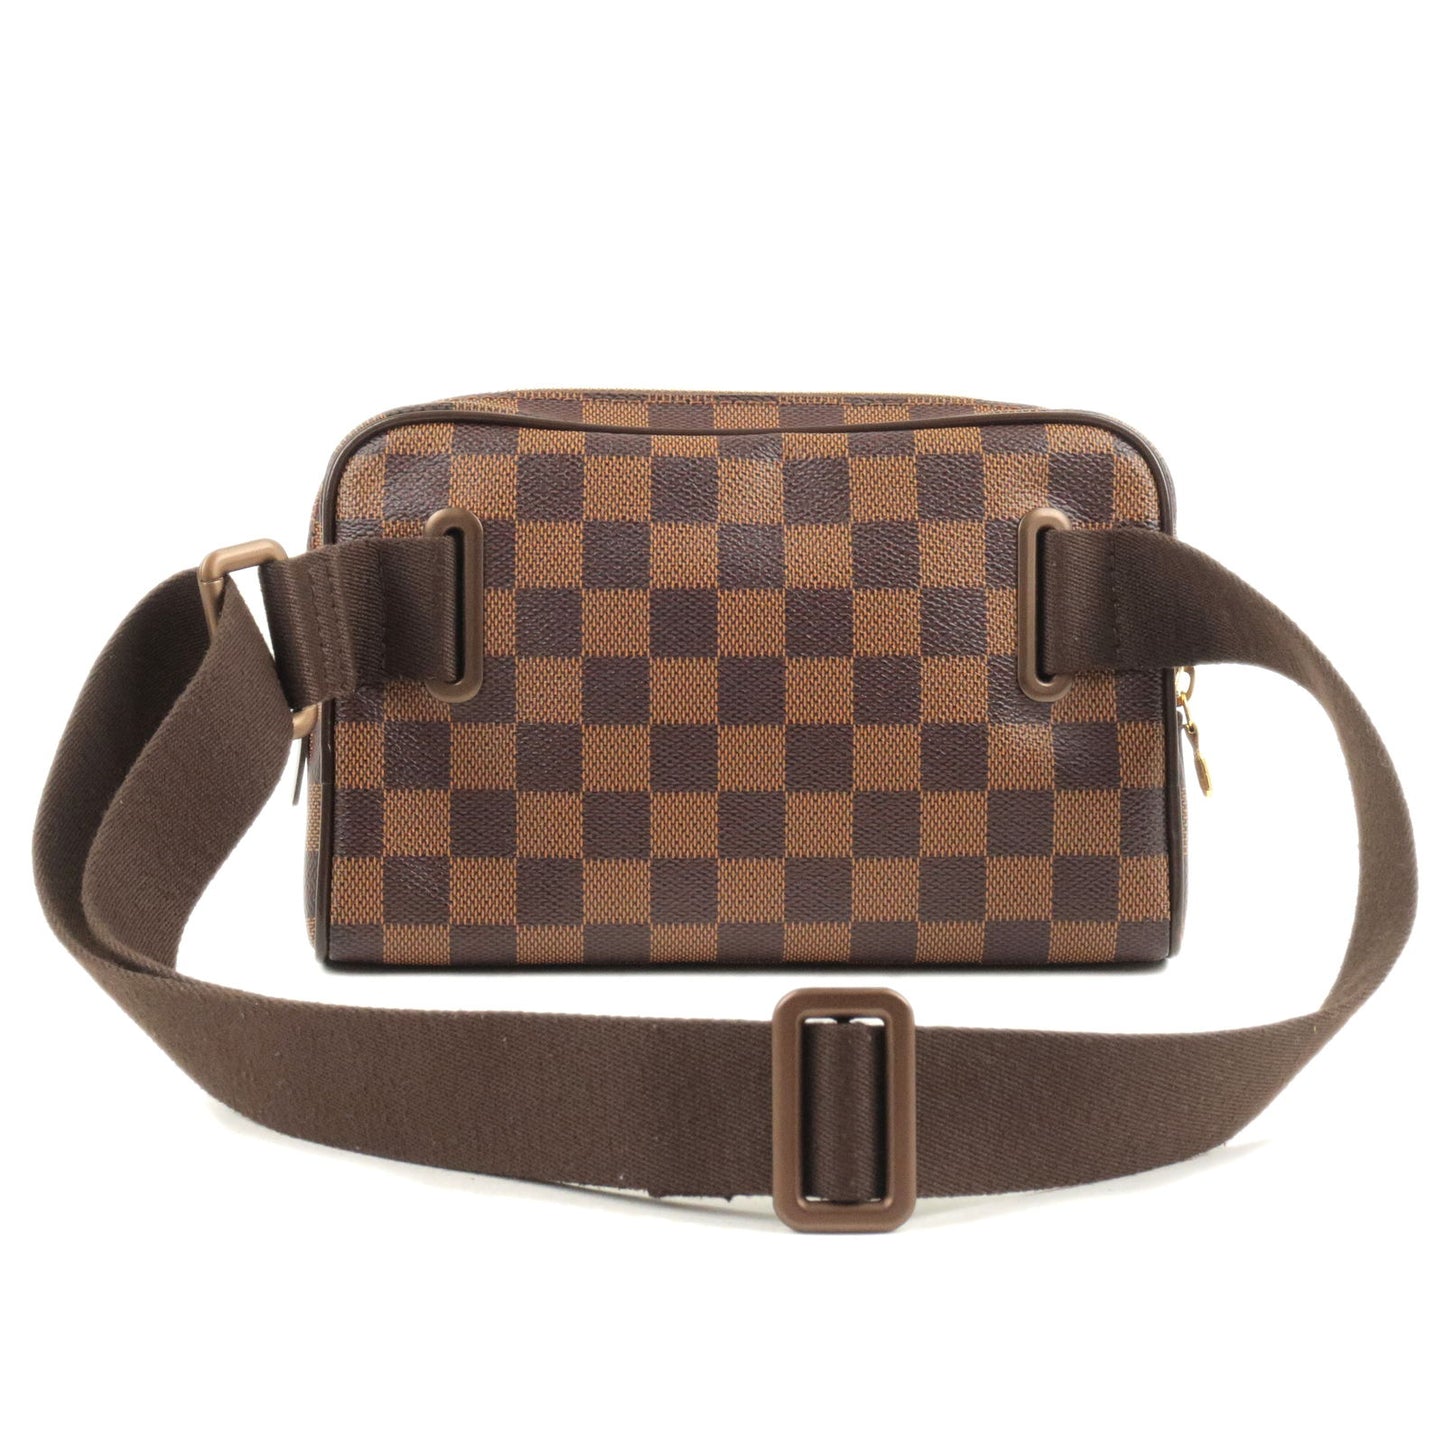 Louis Vuitton Bum Bag Brooklyn N41101 Damier Brown W21cm x H14.5cm x D5cm  Ladies